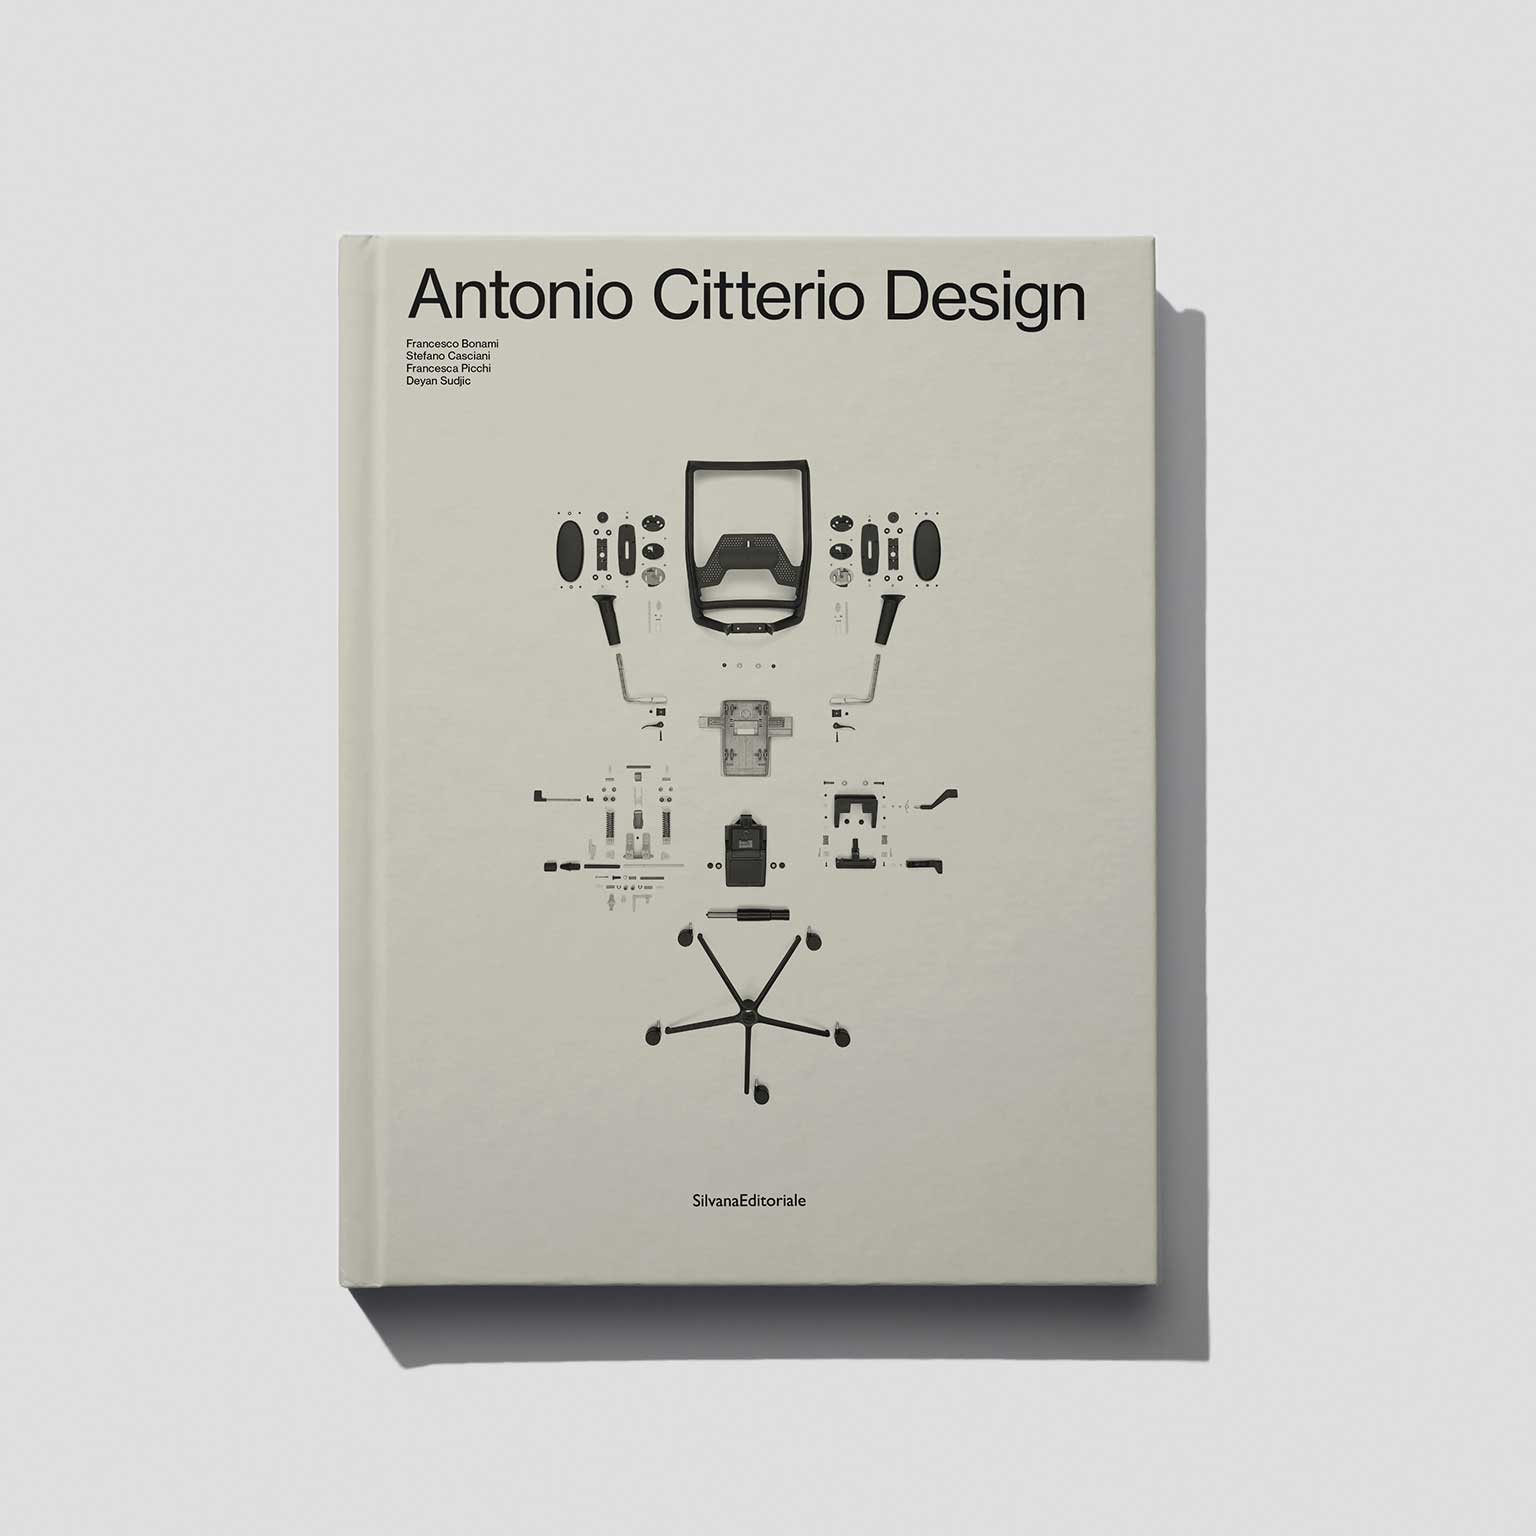 Antonio Citterio Design